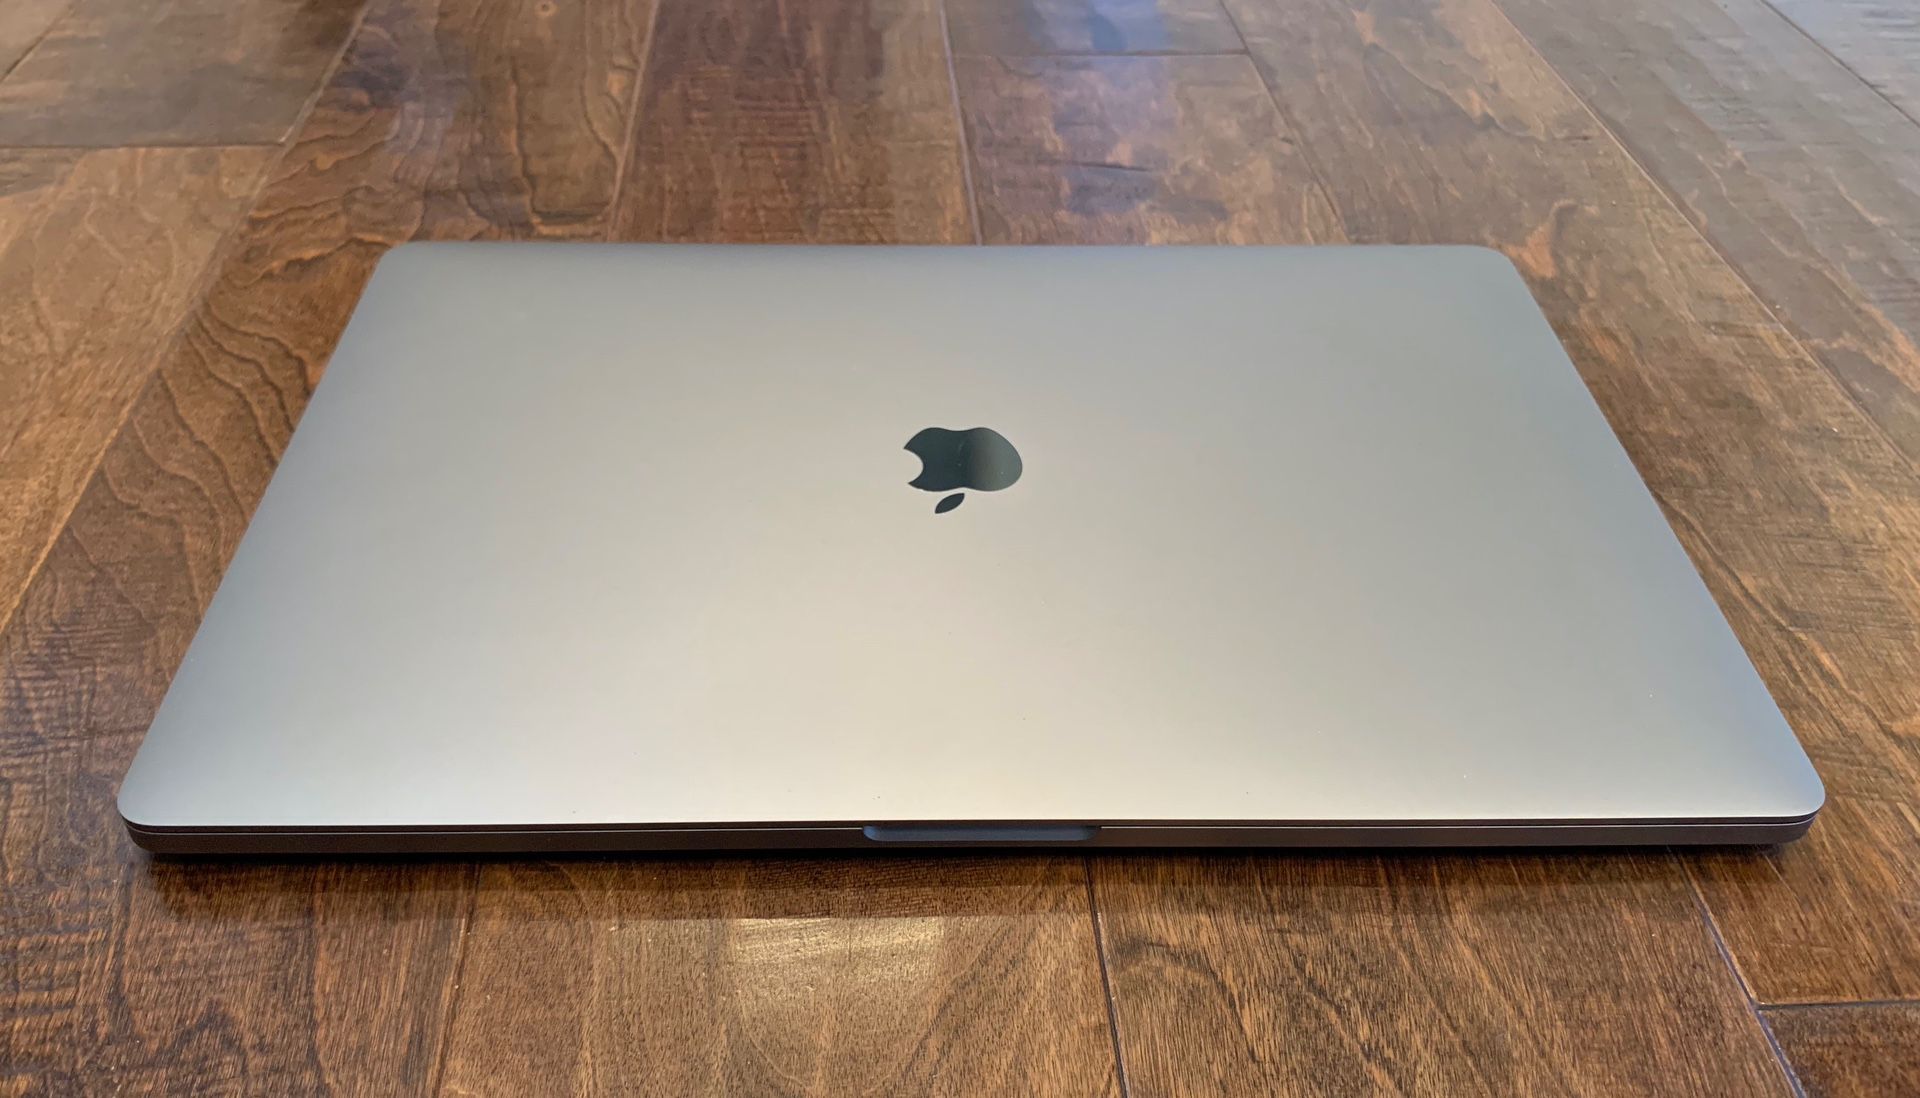 16” MacBook Pro